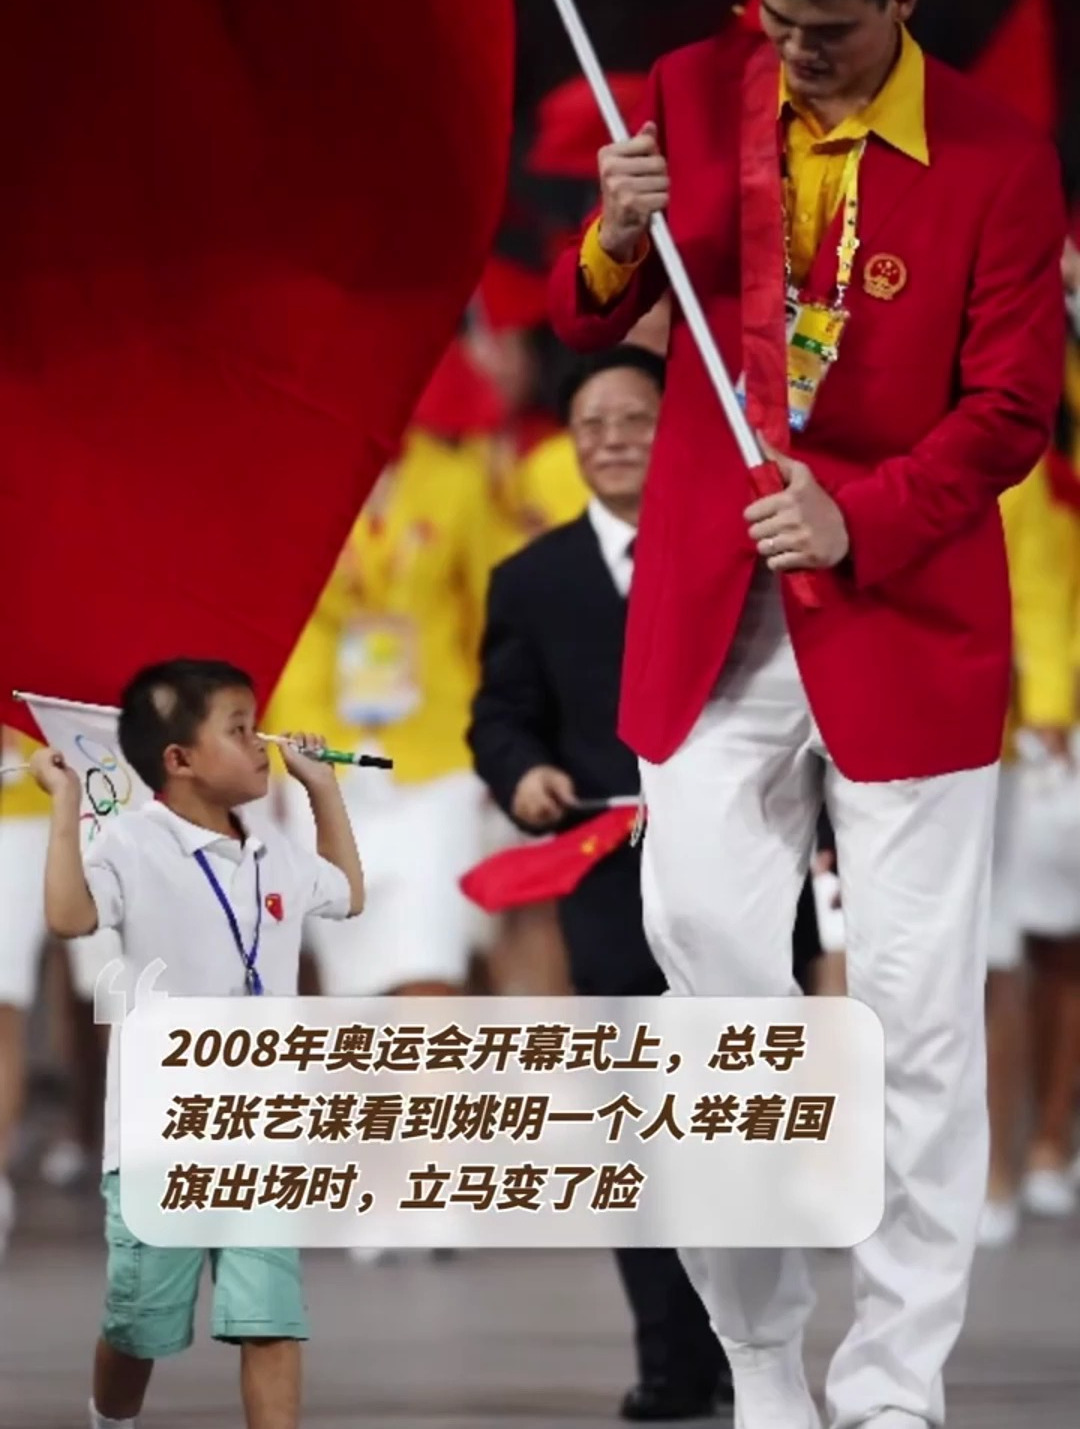 北京奥运会开幕式上,张艺谋看到姚明一个人走在前面,立马变了脸